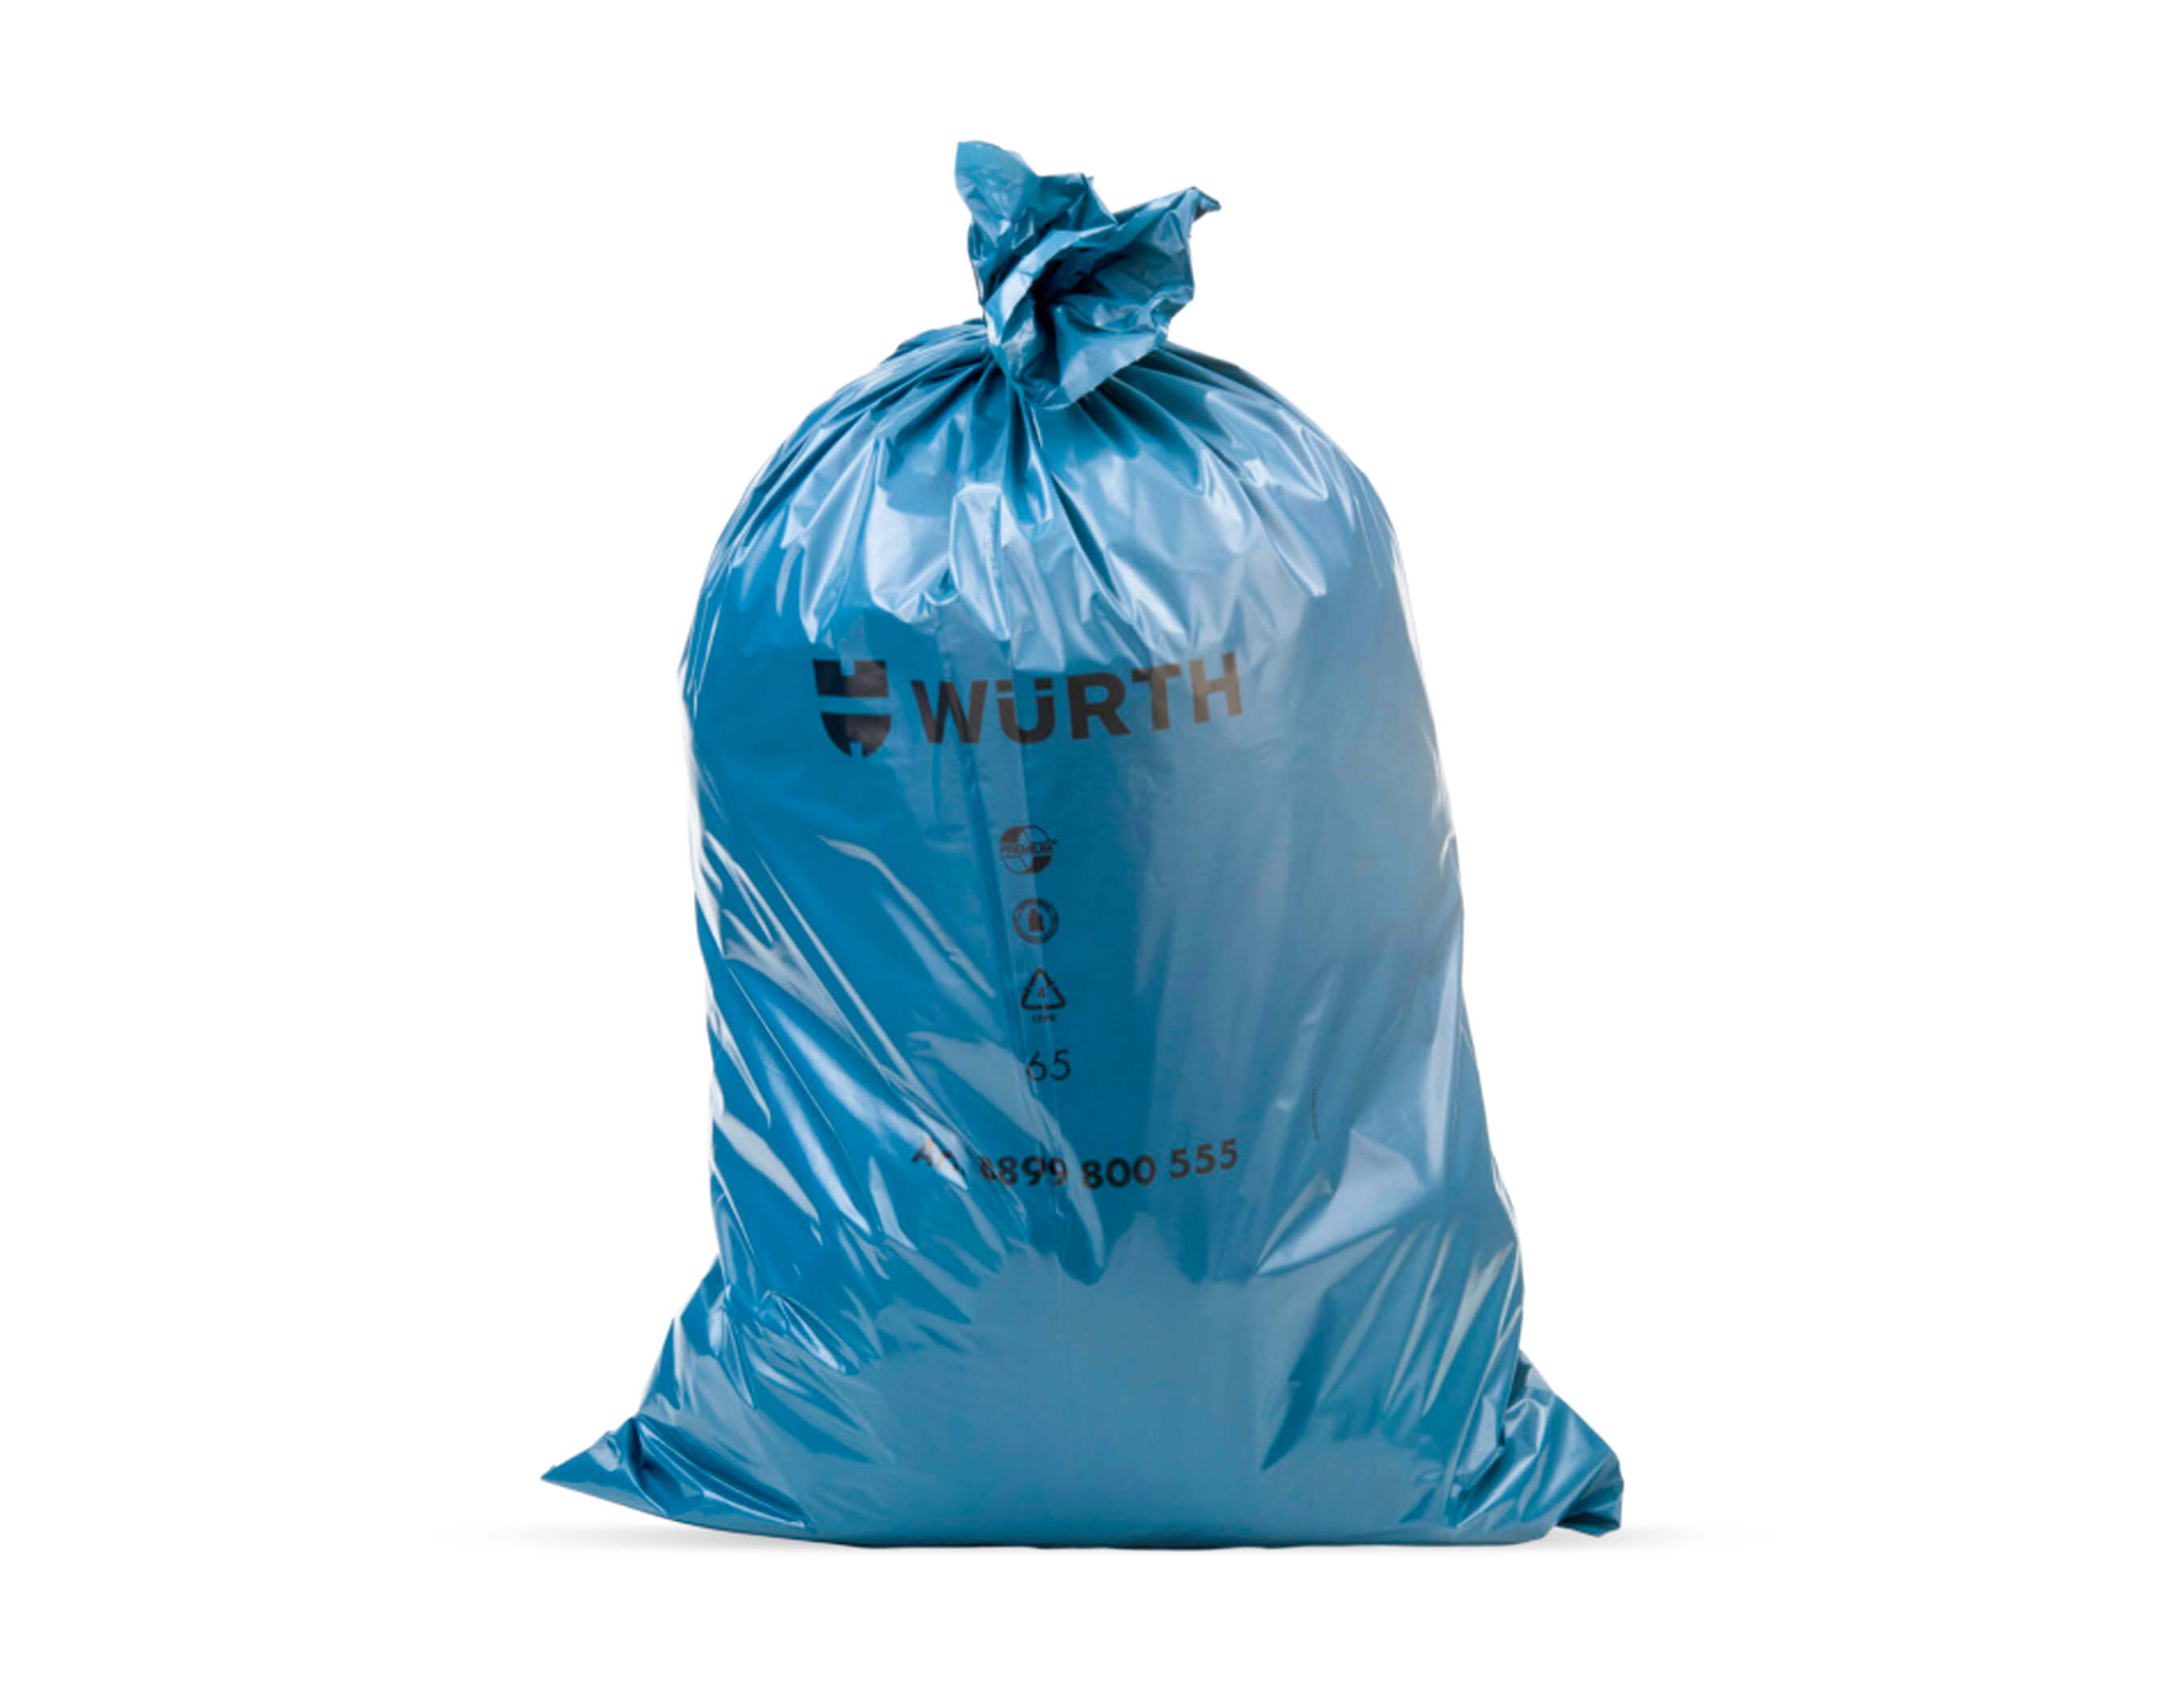 Garbage Bags 70х110cm 120l at a price of 3.59 lv. online 